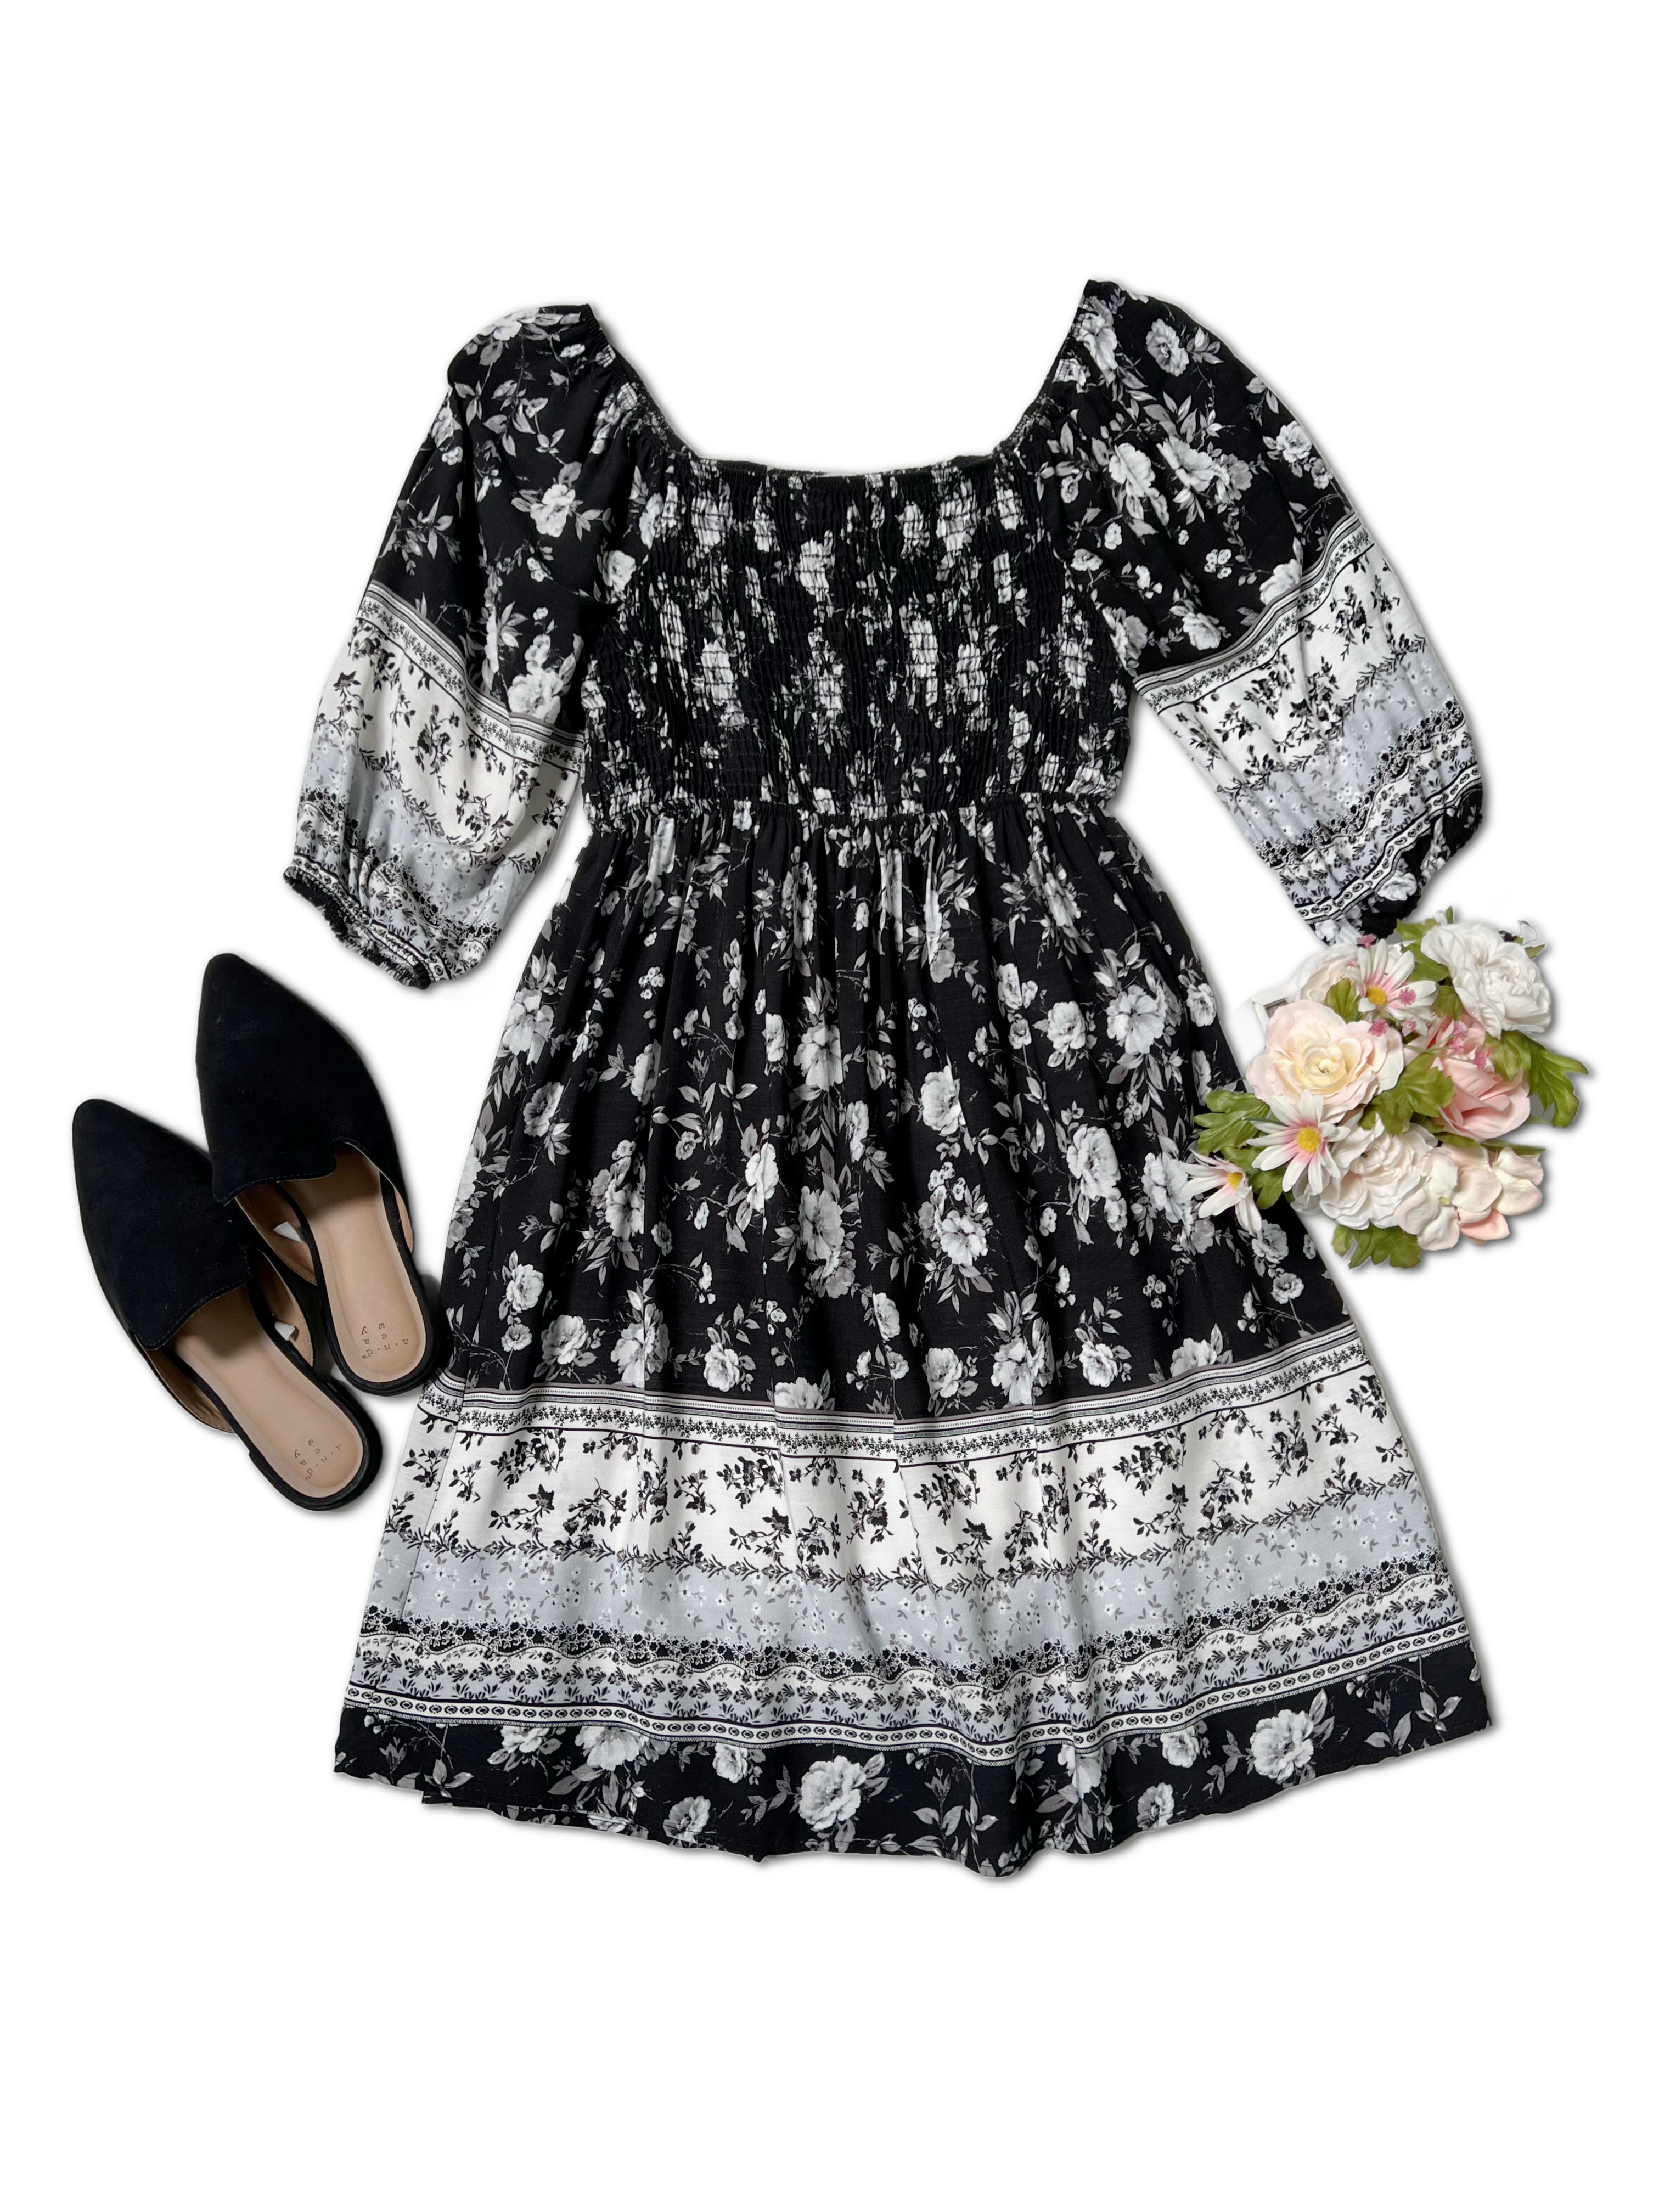 Floral Cascade - Dress Boutique Simplified